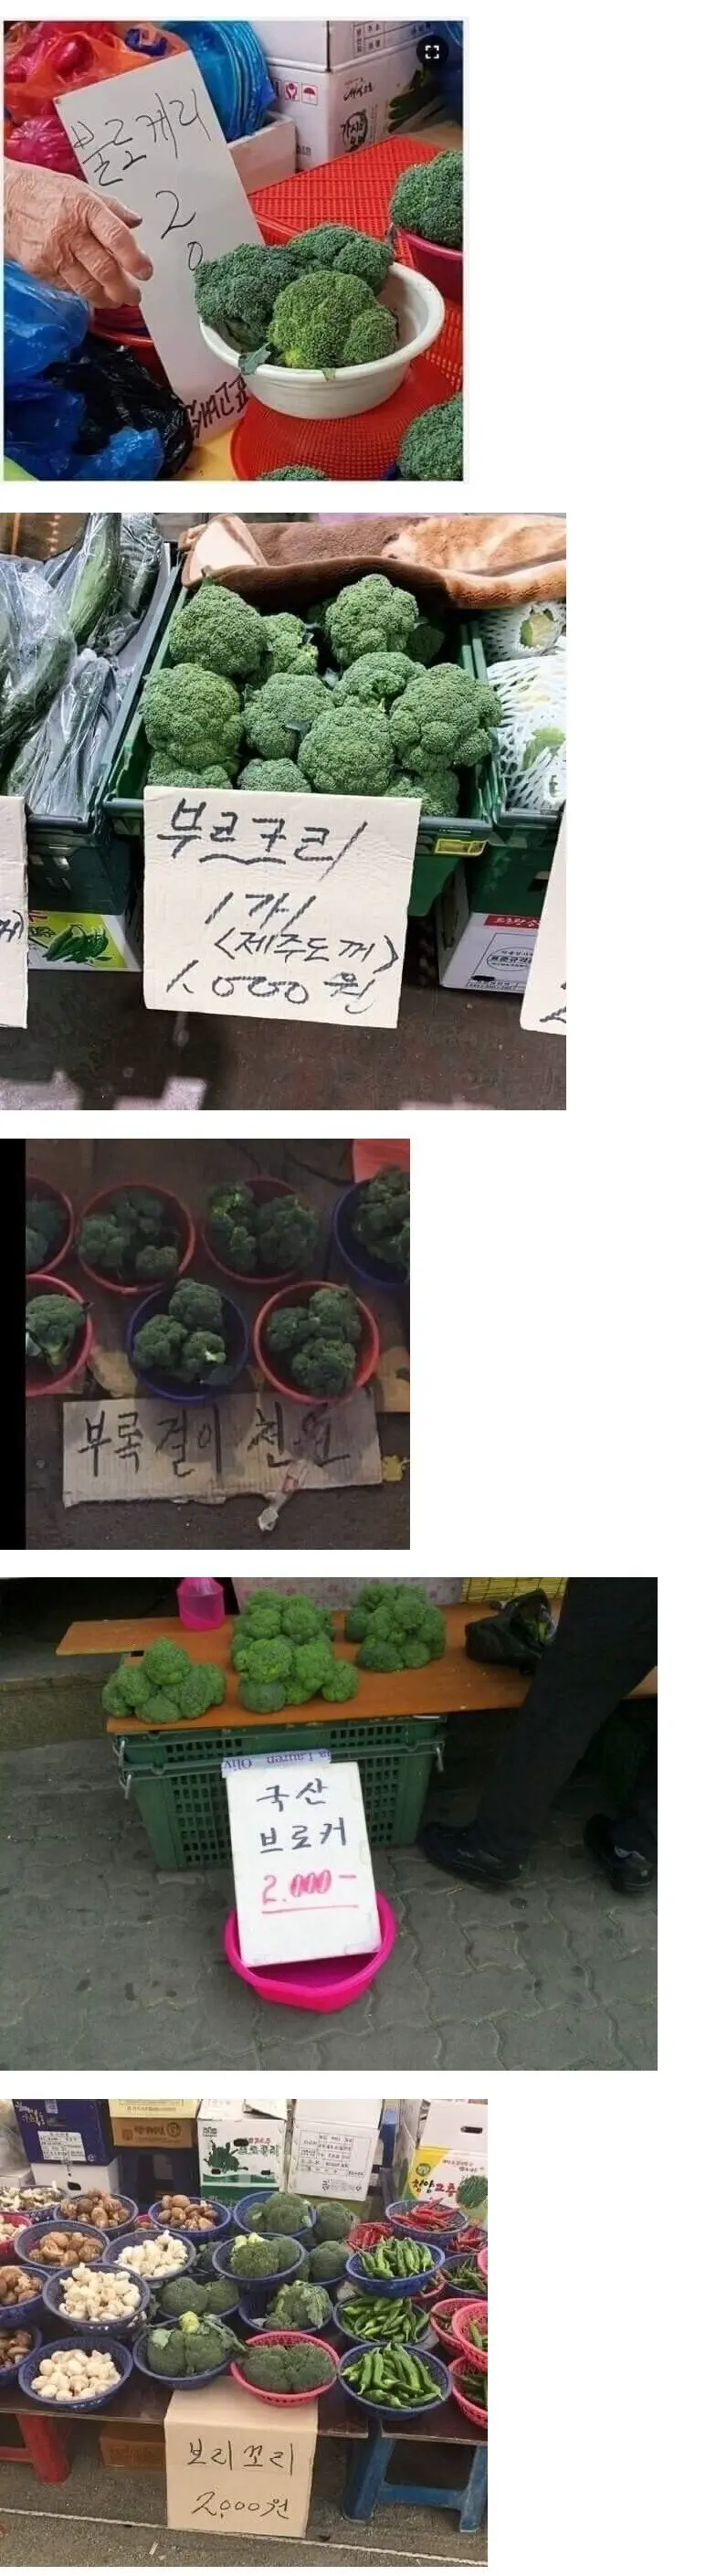 불리는 이름이 다양한 채소 | mbong.kr 엠봉